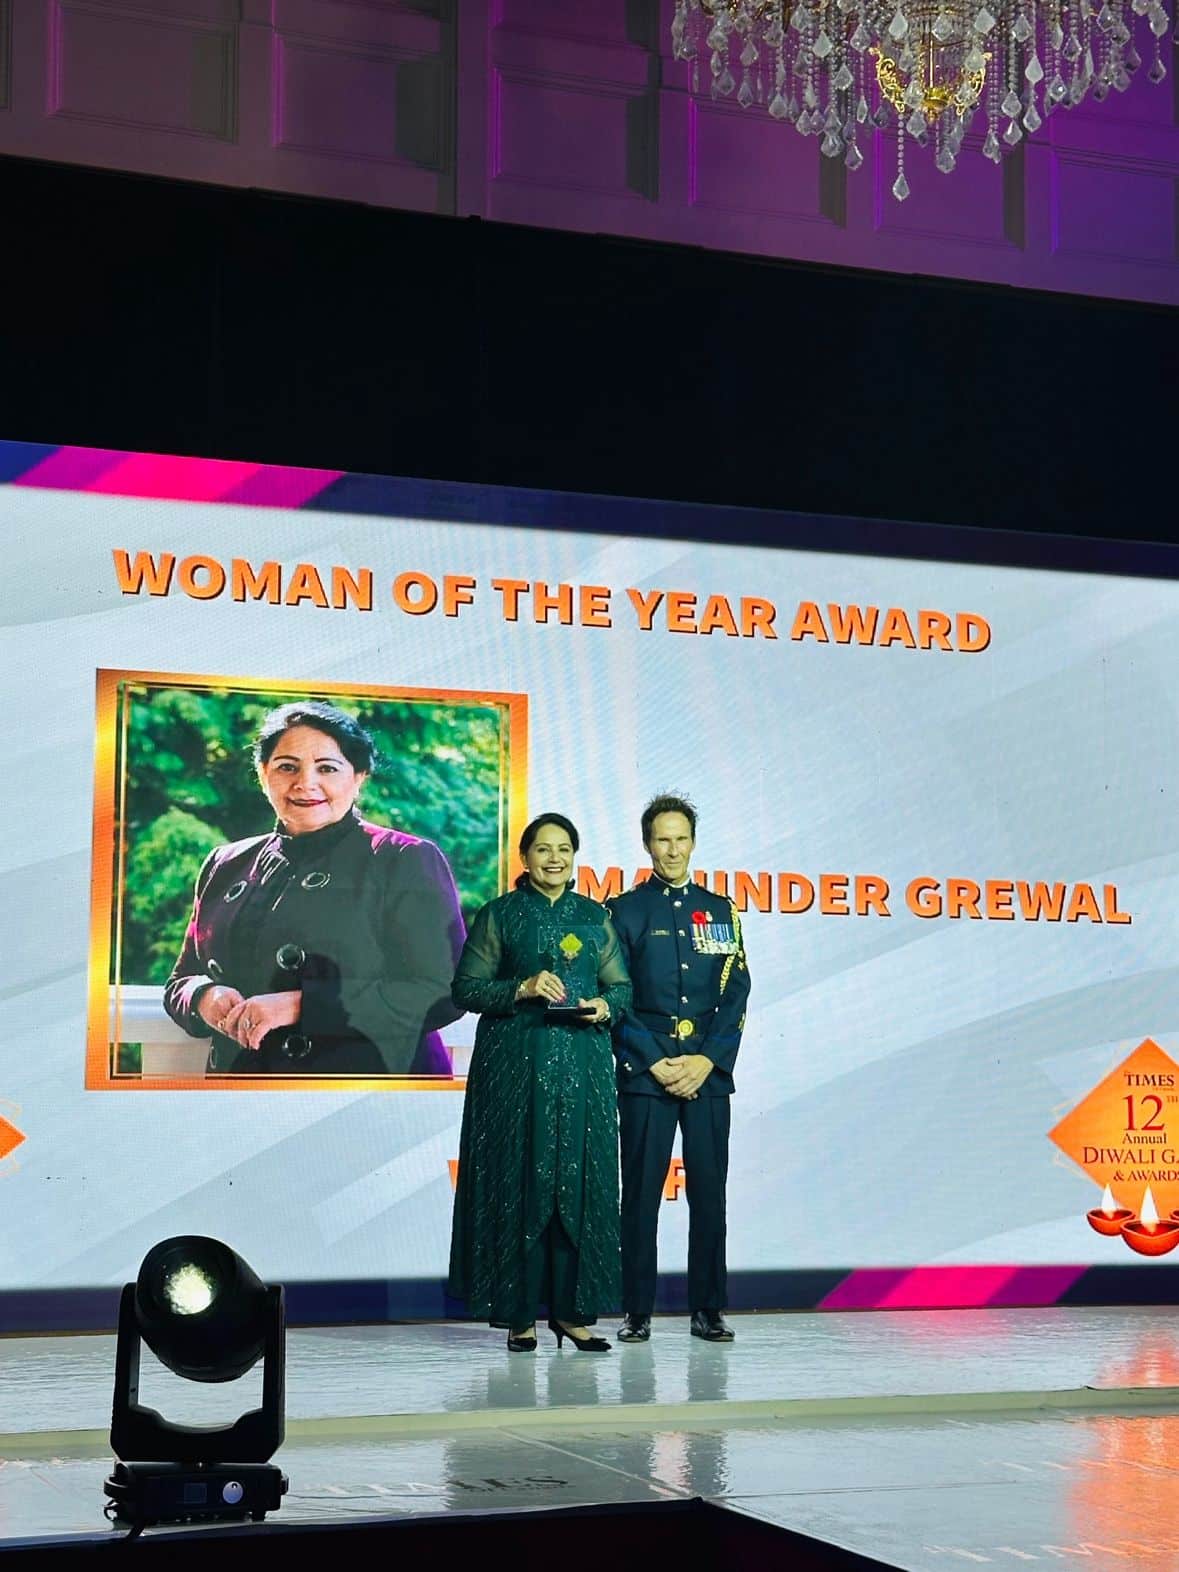 Maninder grewal Woman of the year award